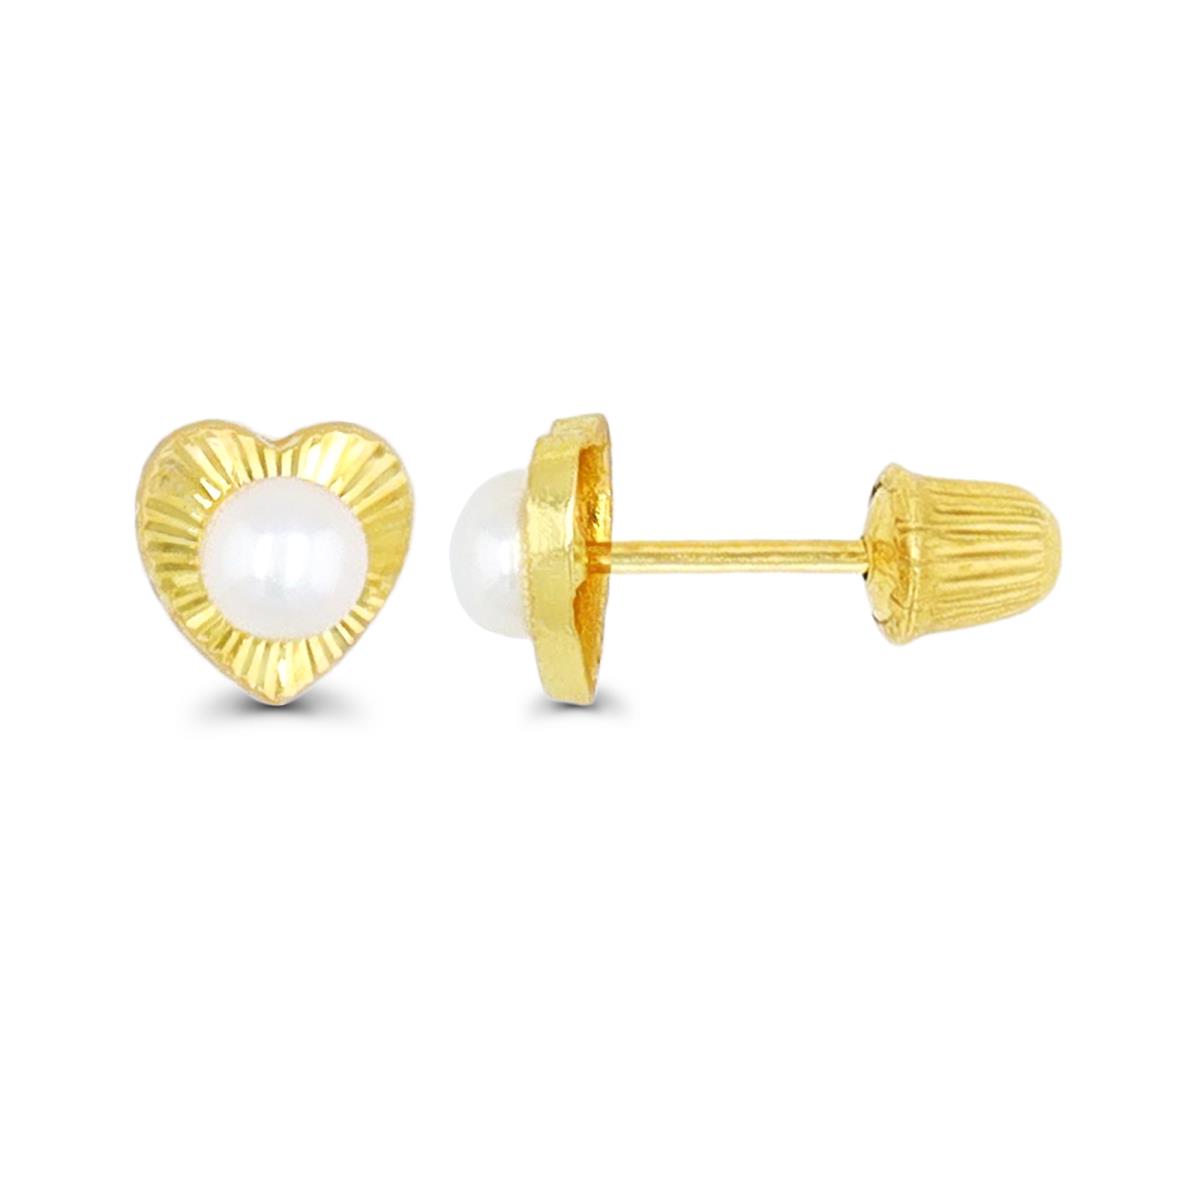 10K Yellow Gold Diamond Cut Heart Bezel Freshwater Pearl Hat Screw Back Stud Earring